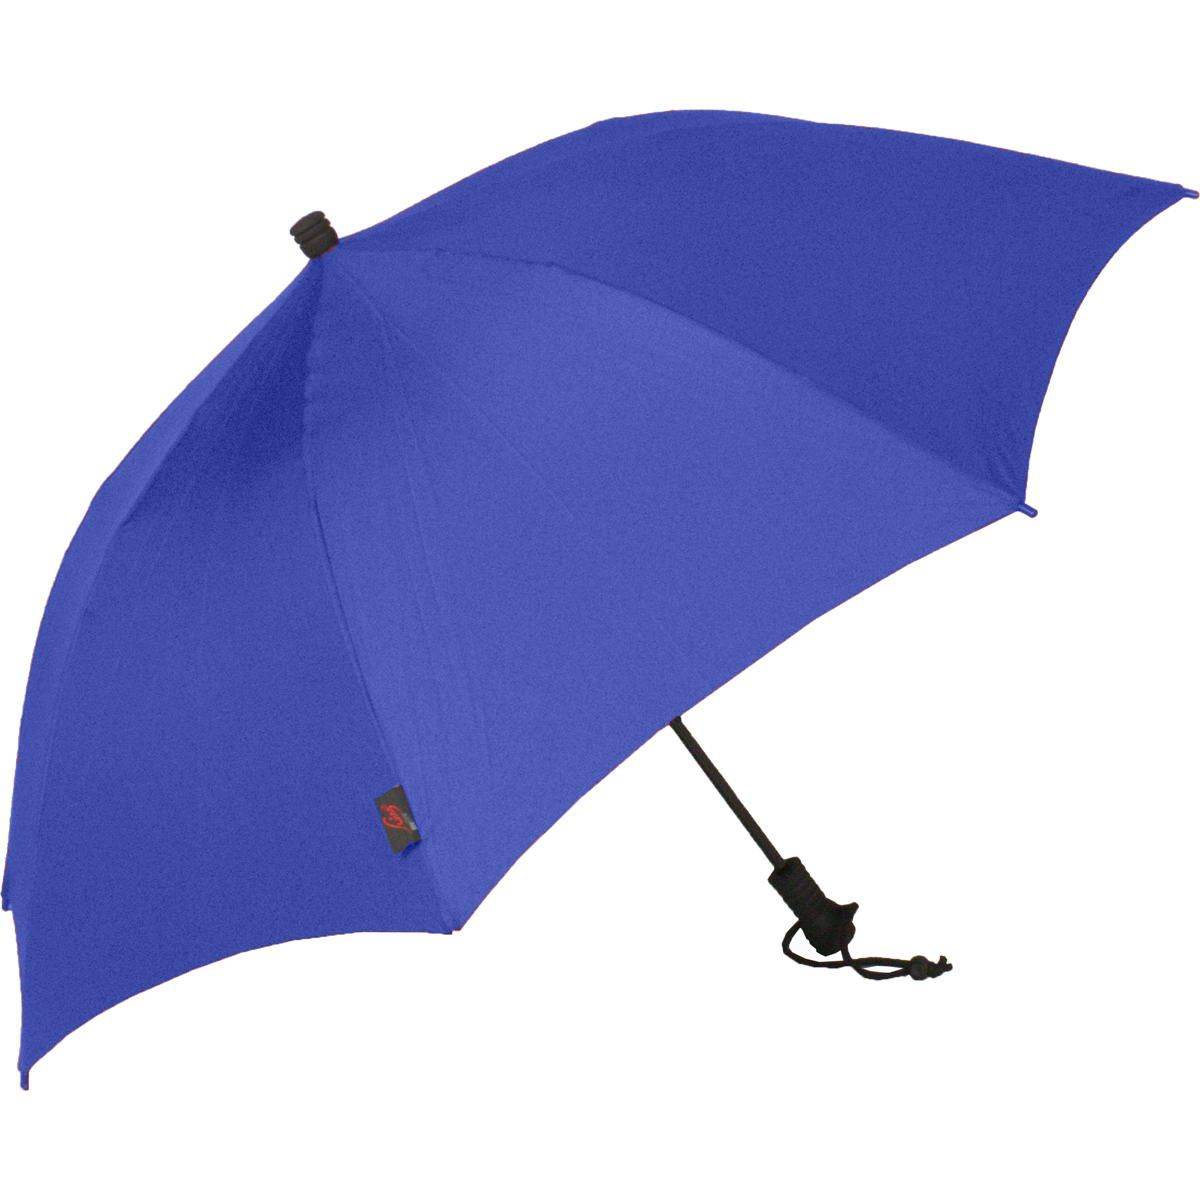 Euroschirm Swing Liteflex Regenschirm günstig kaufen